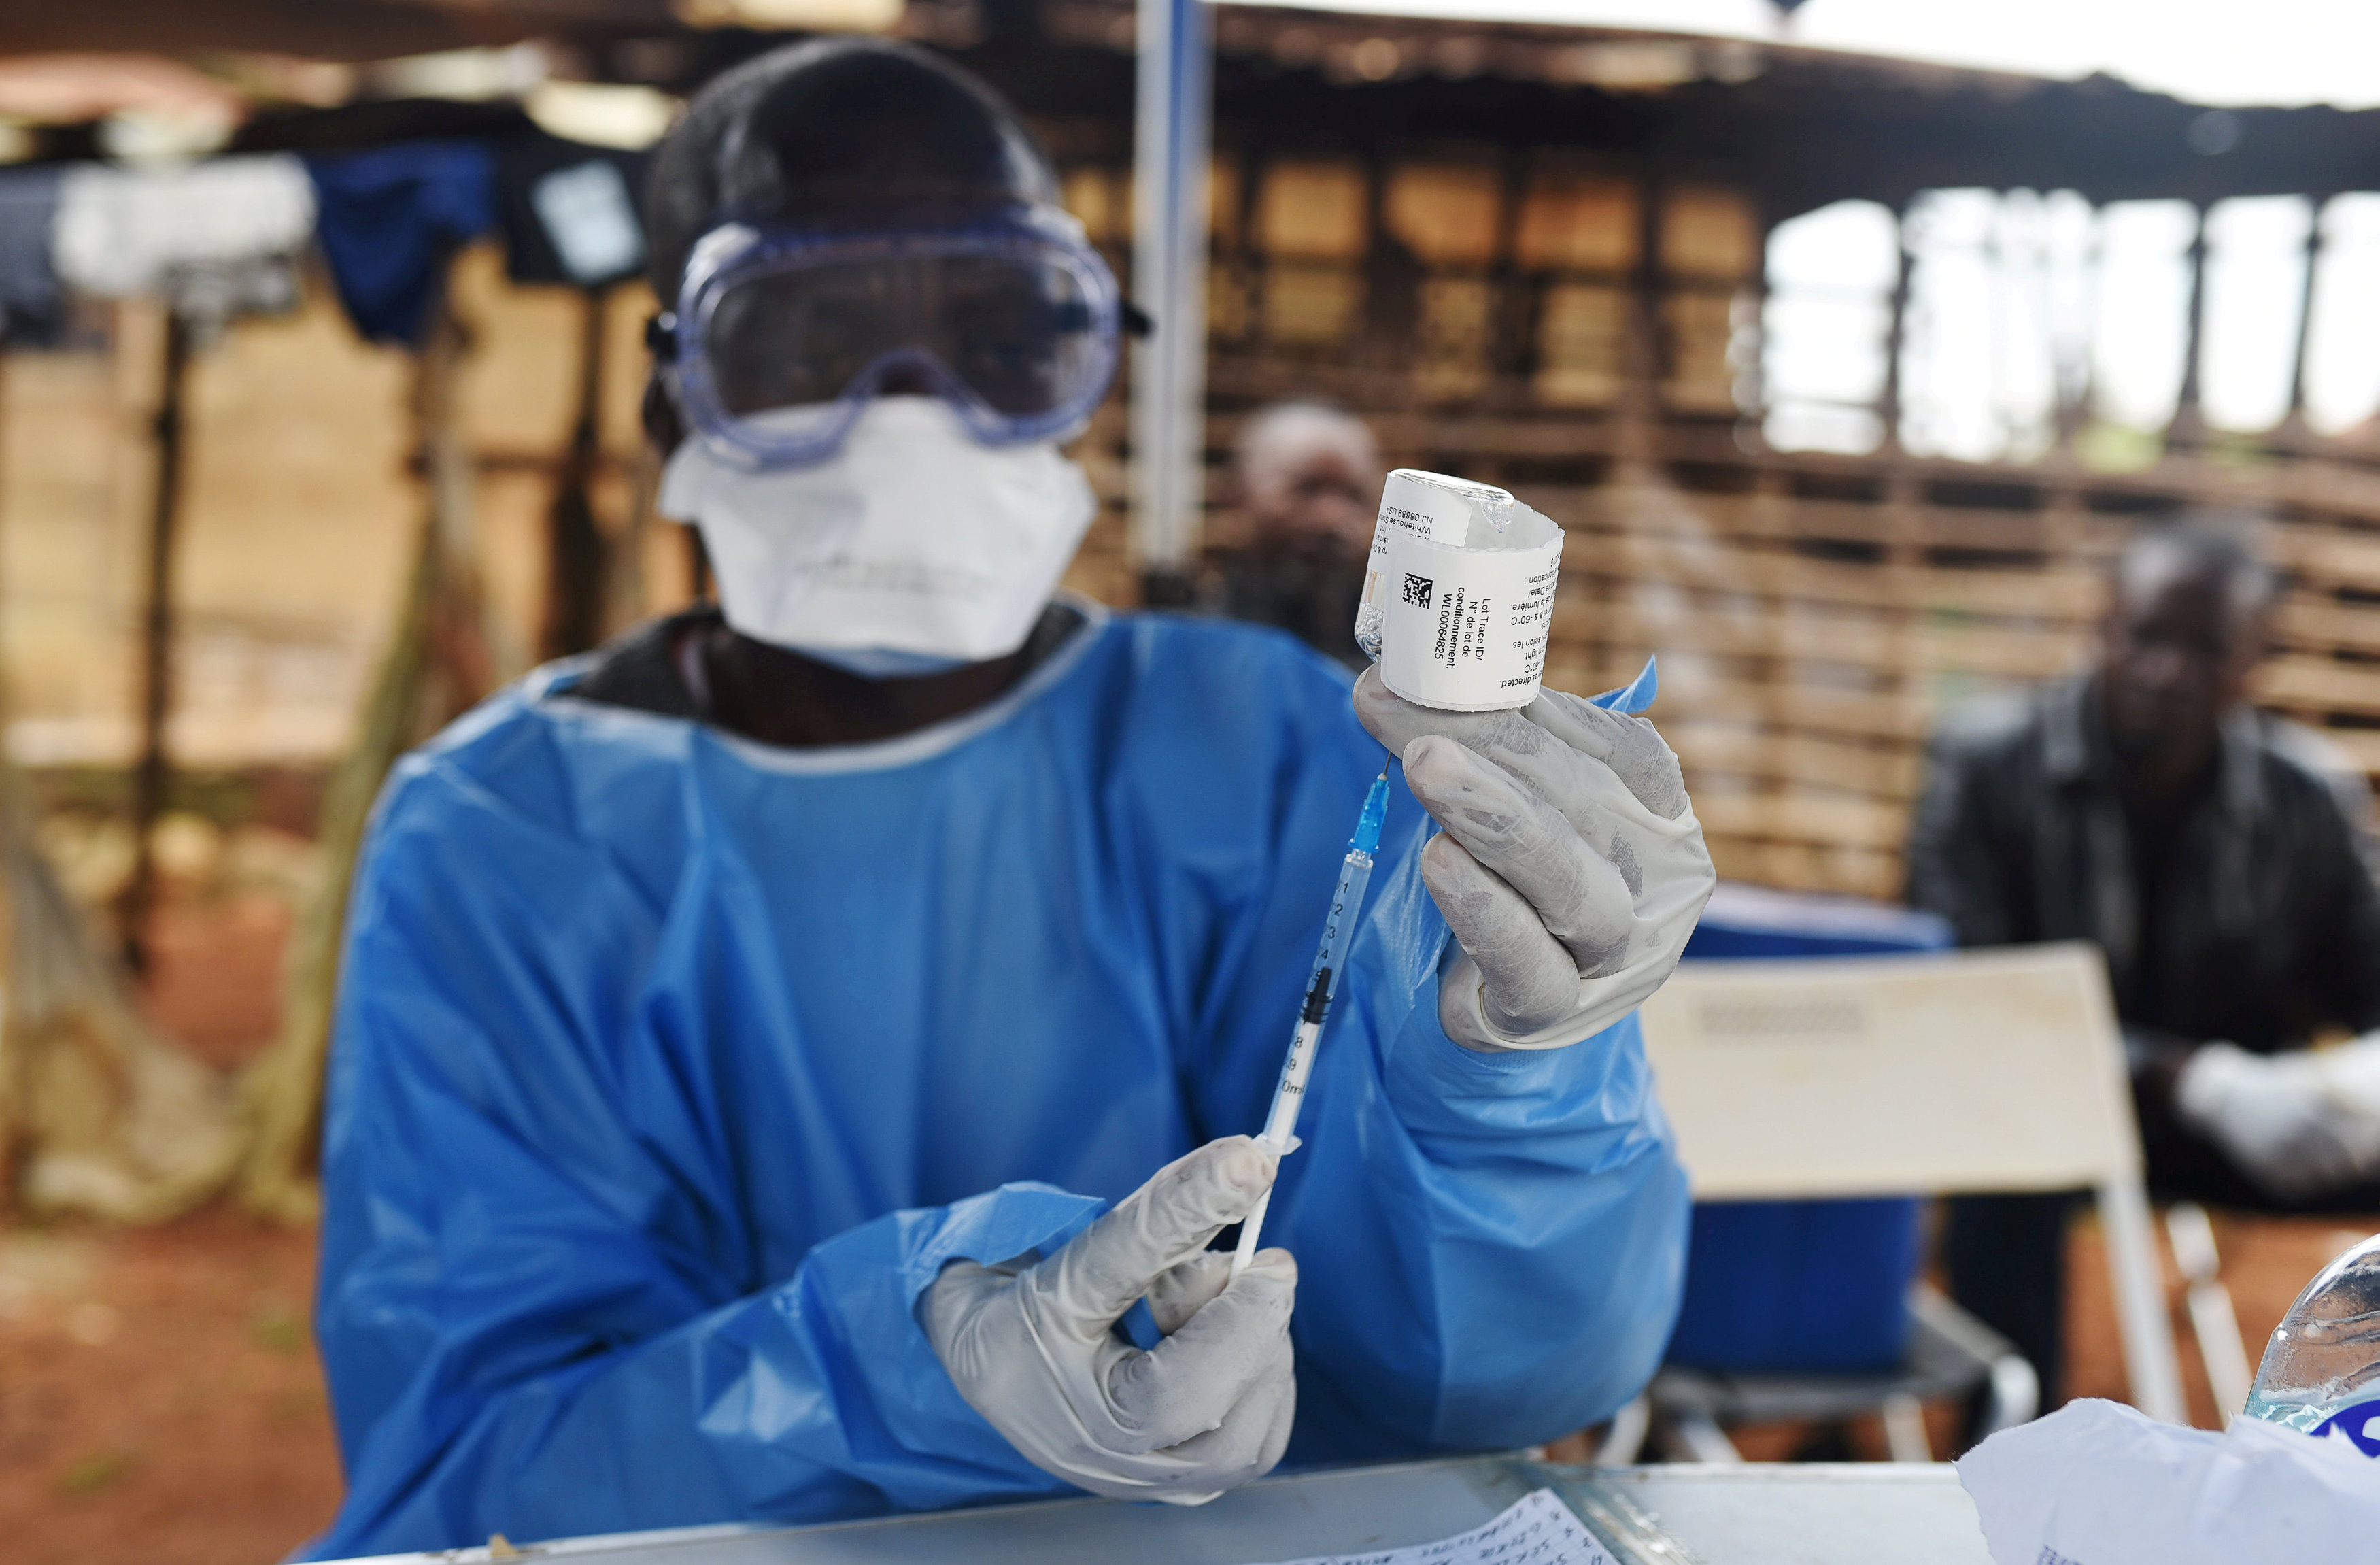 Brote de ébola en Congo, segundo más grande en la historia: OMS